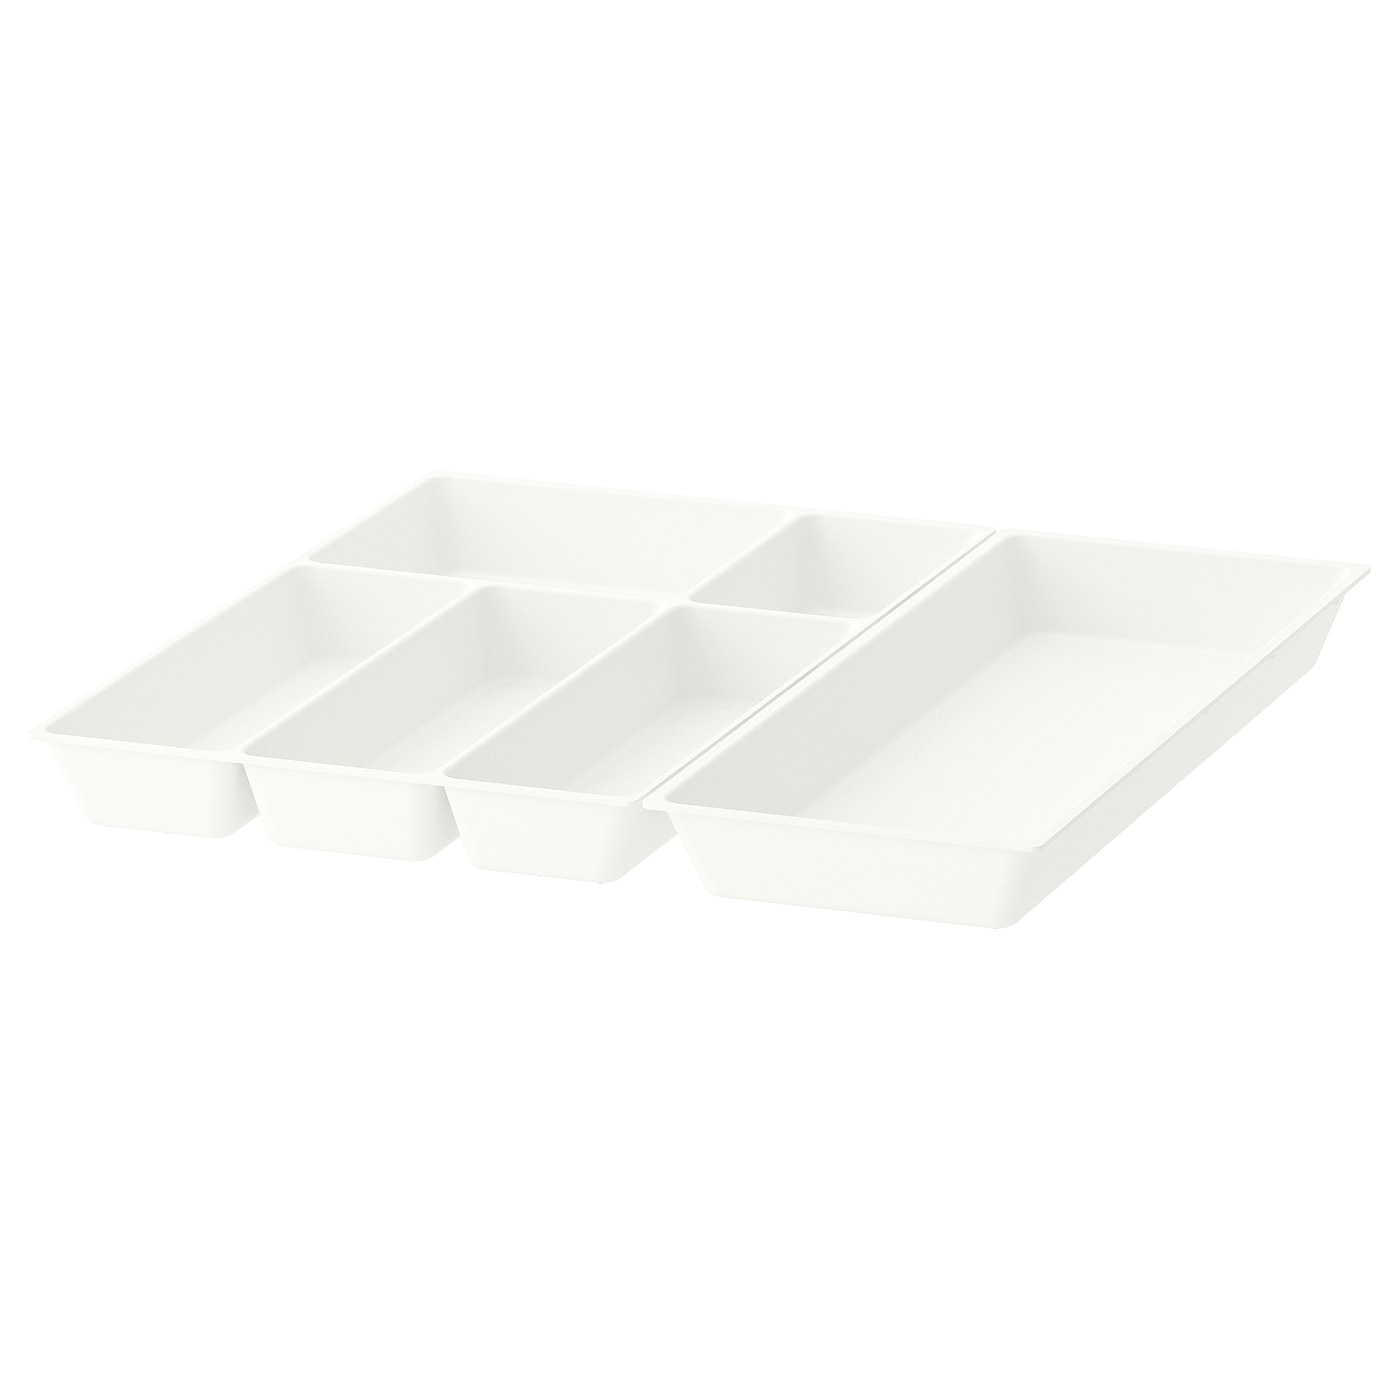 IKEA UPPDATERA Taca na sztućce/taca na przybory, biały, 52x50 cm